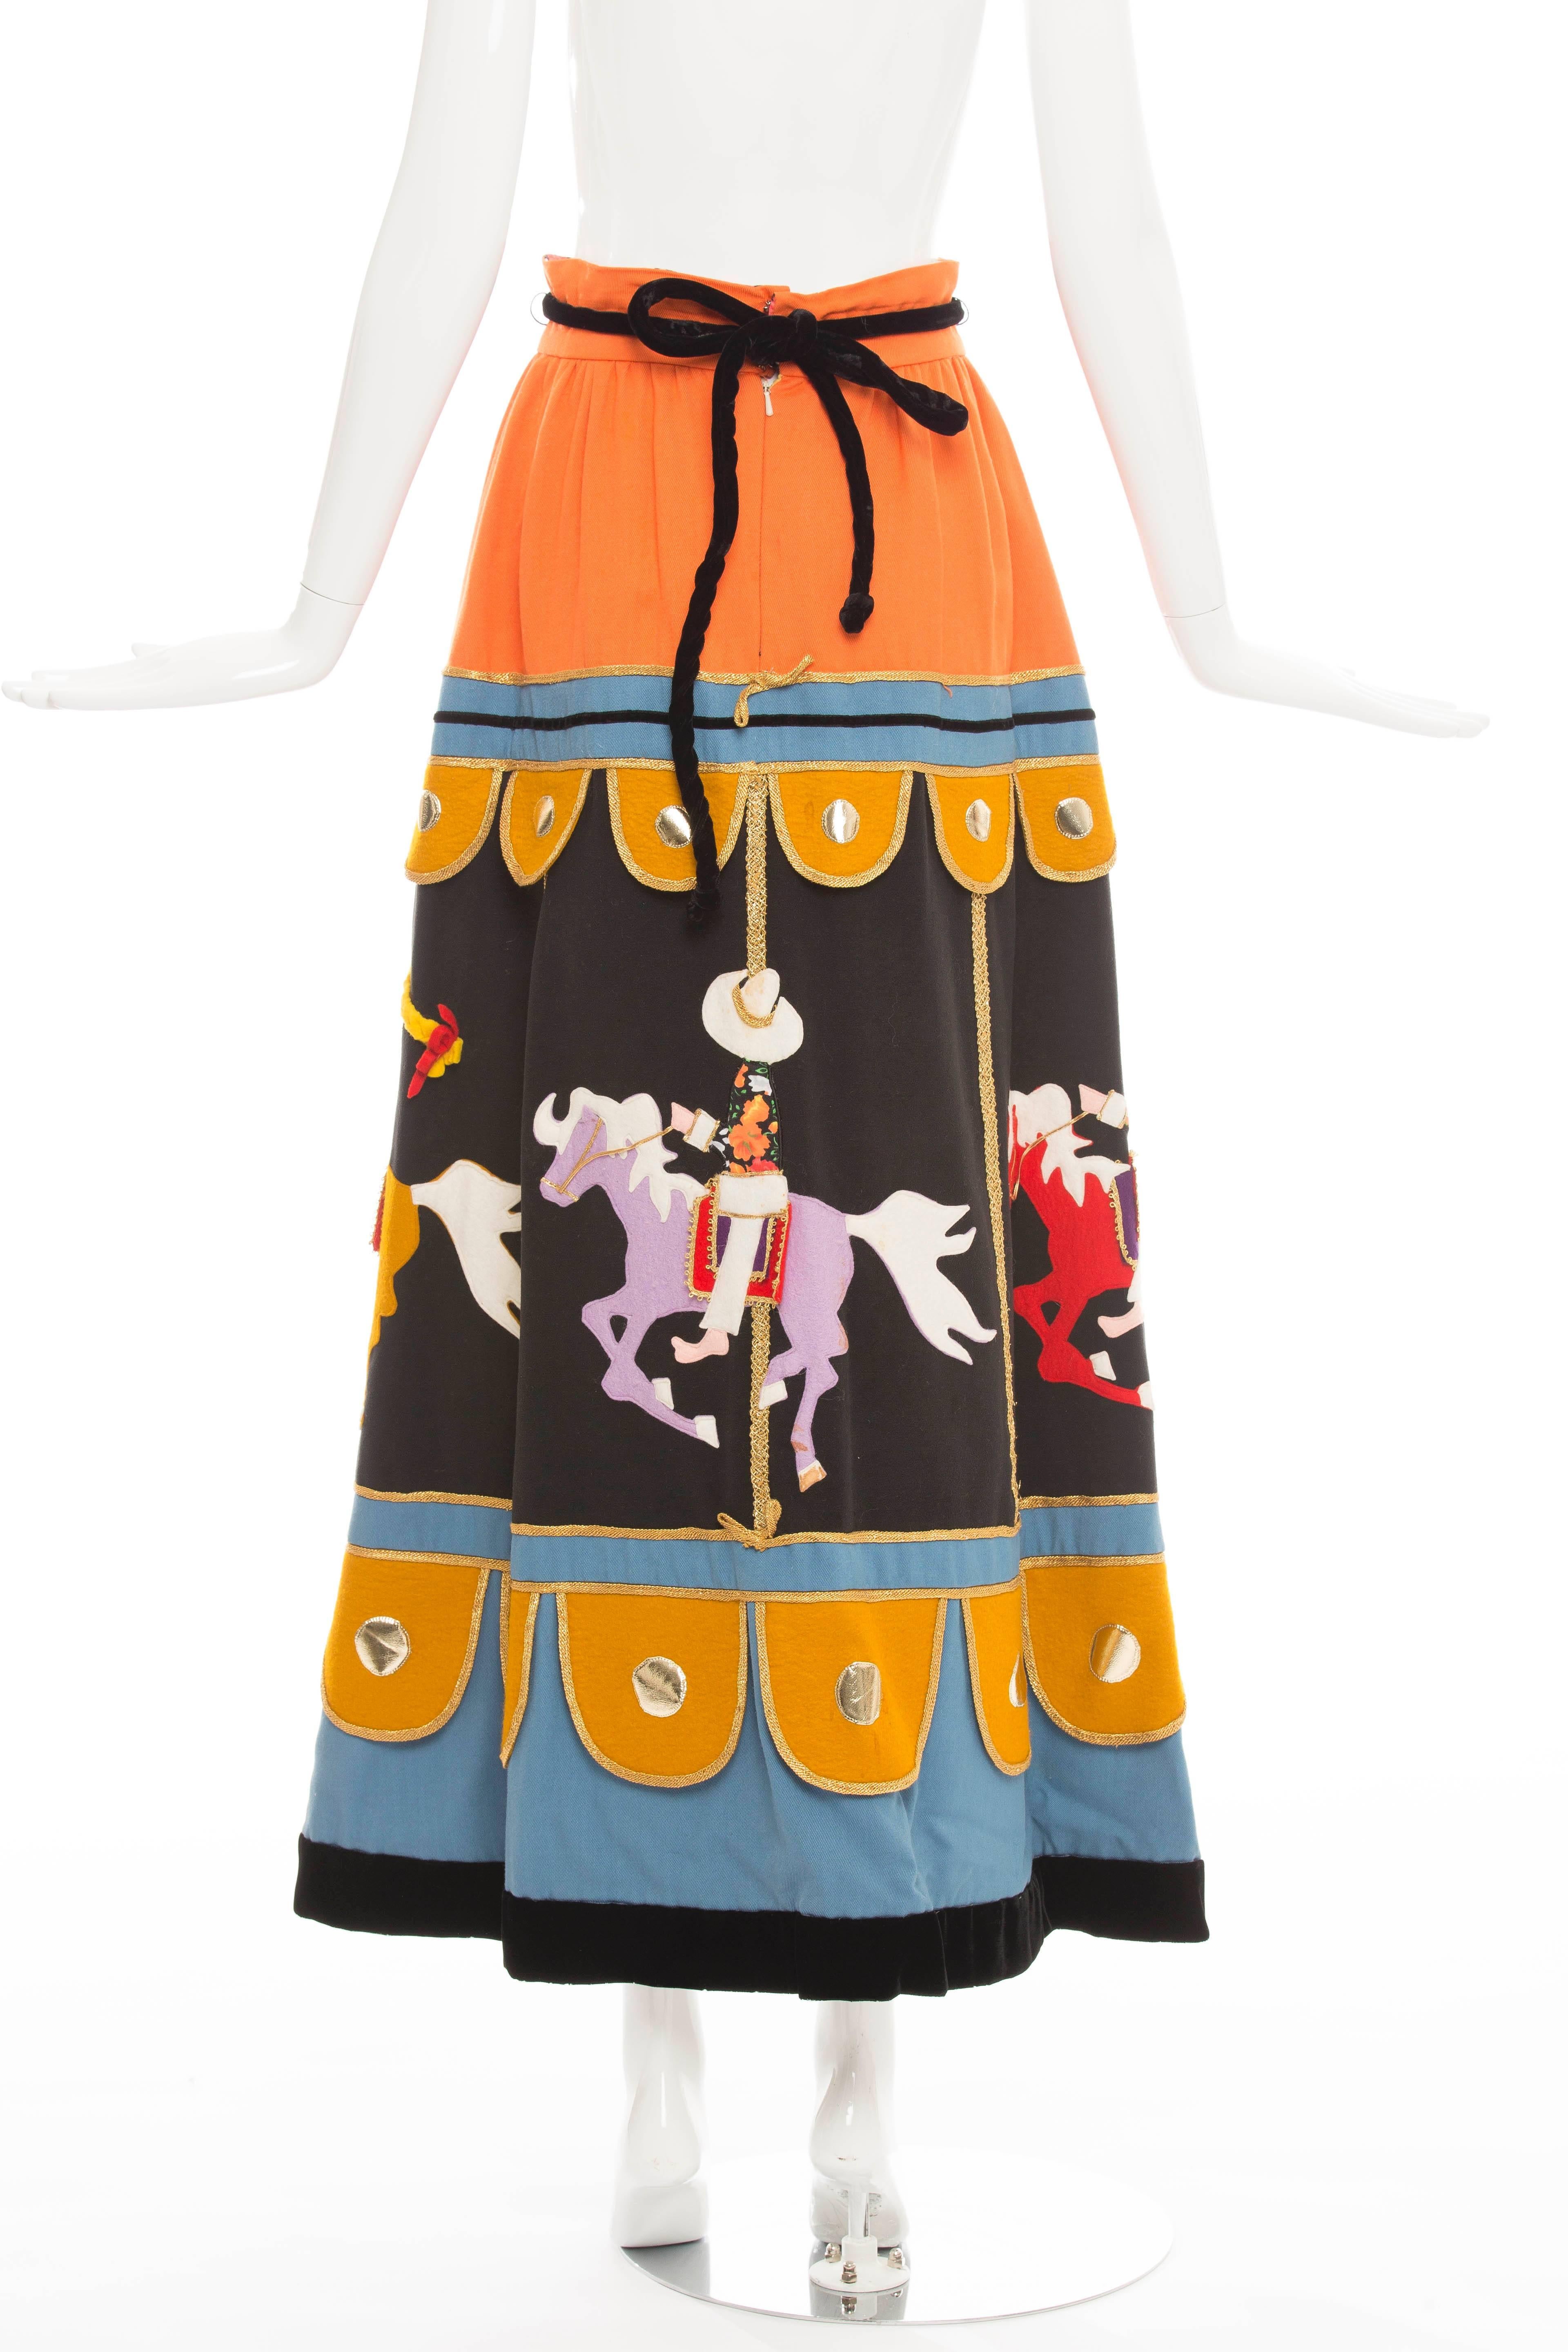 carousel skirt